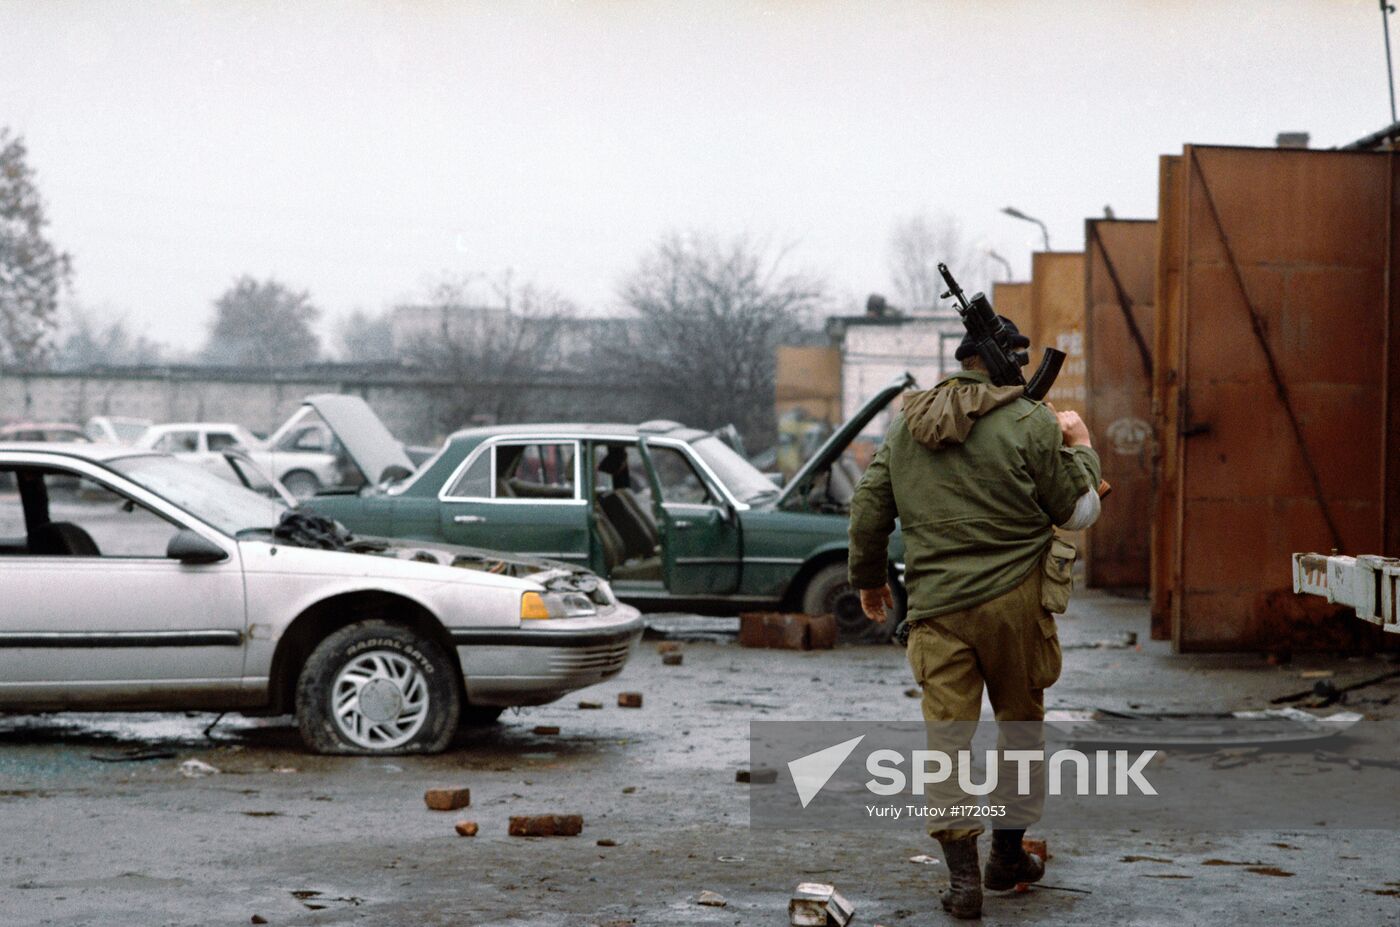 Chechnya, Grozny, warehouse, cars, theft